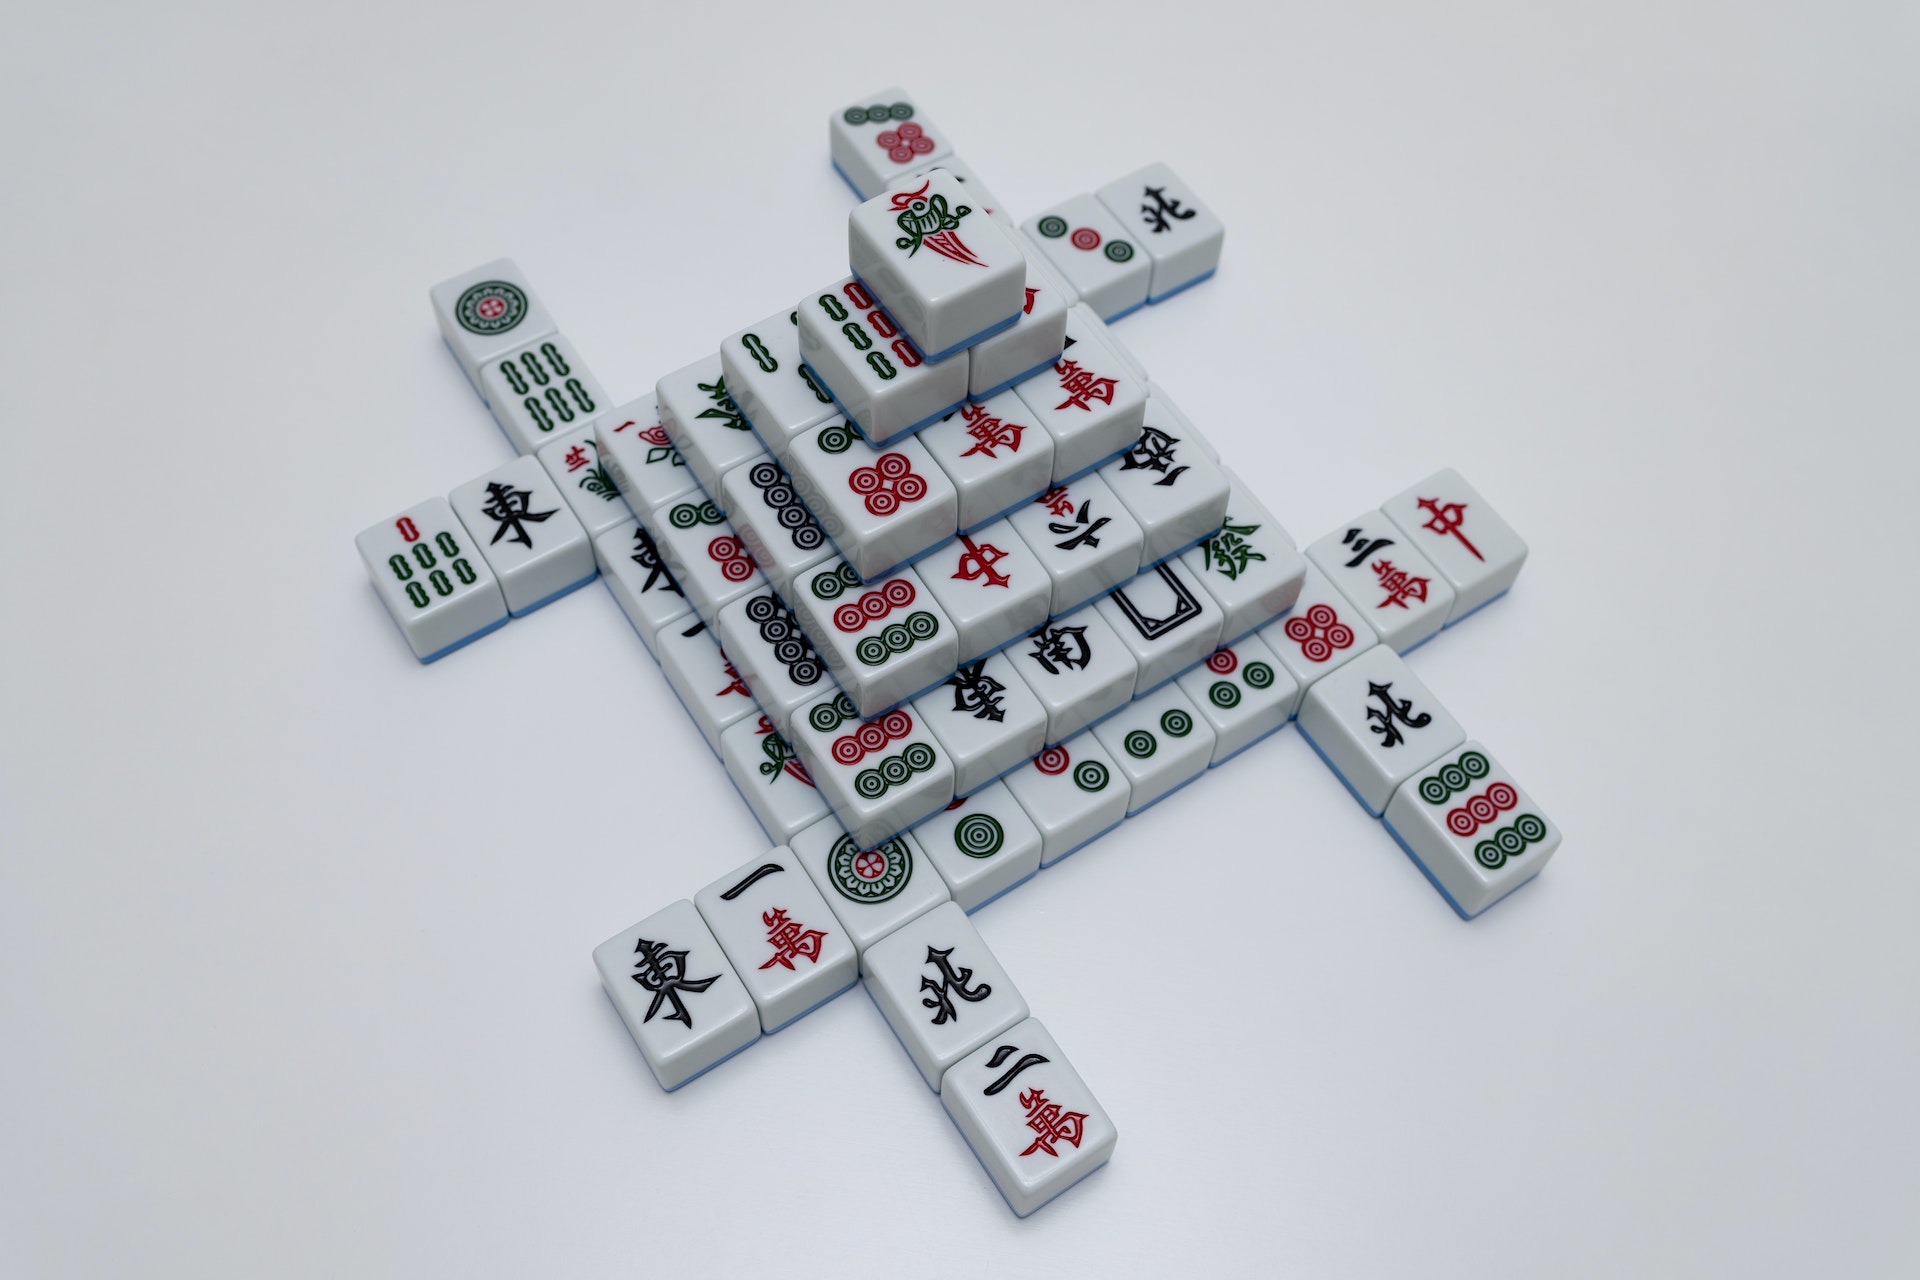 Mahjong Dragon: Board Game – Apps no Google Play